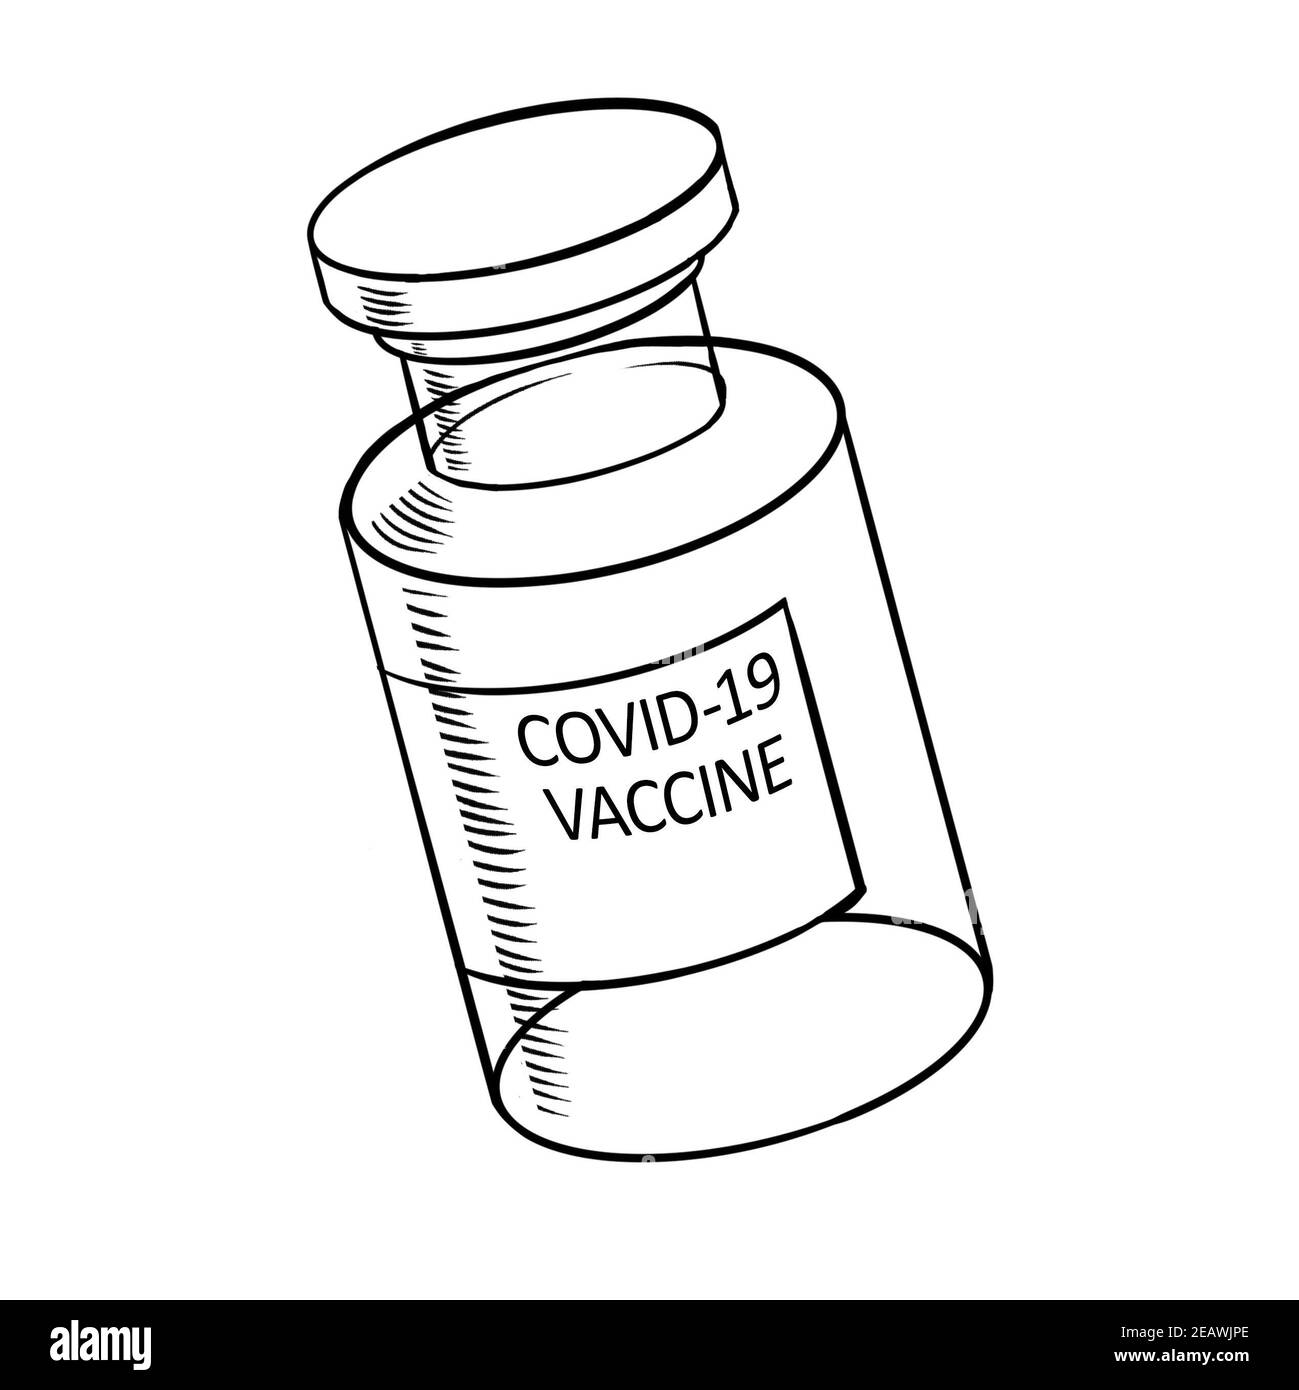 COVID-19 icona flaconcino vaccino coronavirus, illustrazione con testo inscriprione, doodle e scetch, vaccinazione Foto Stock